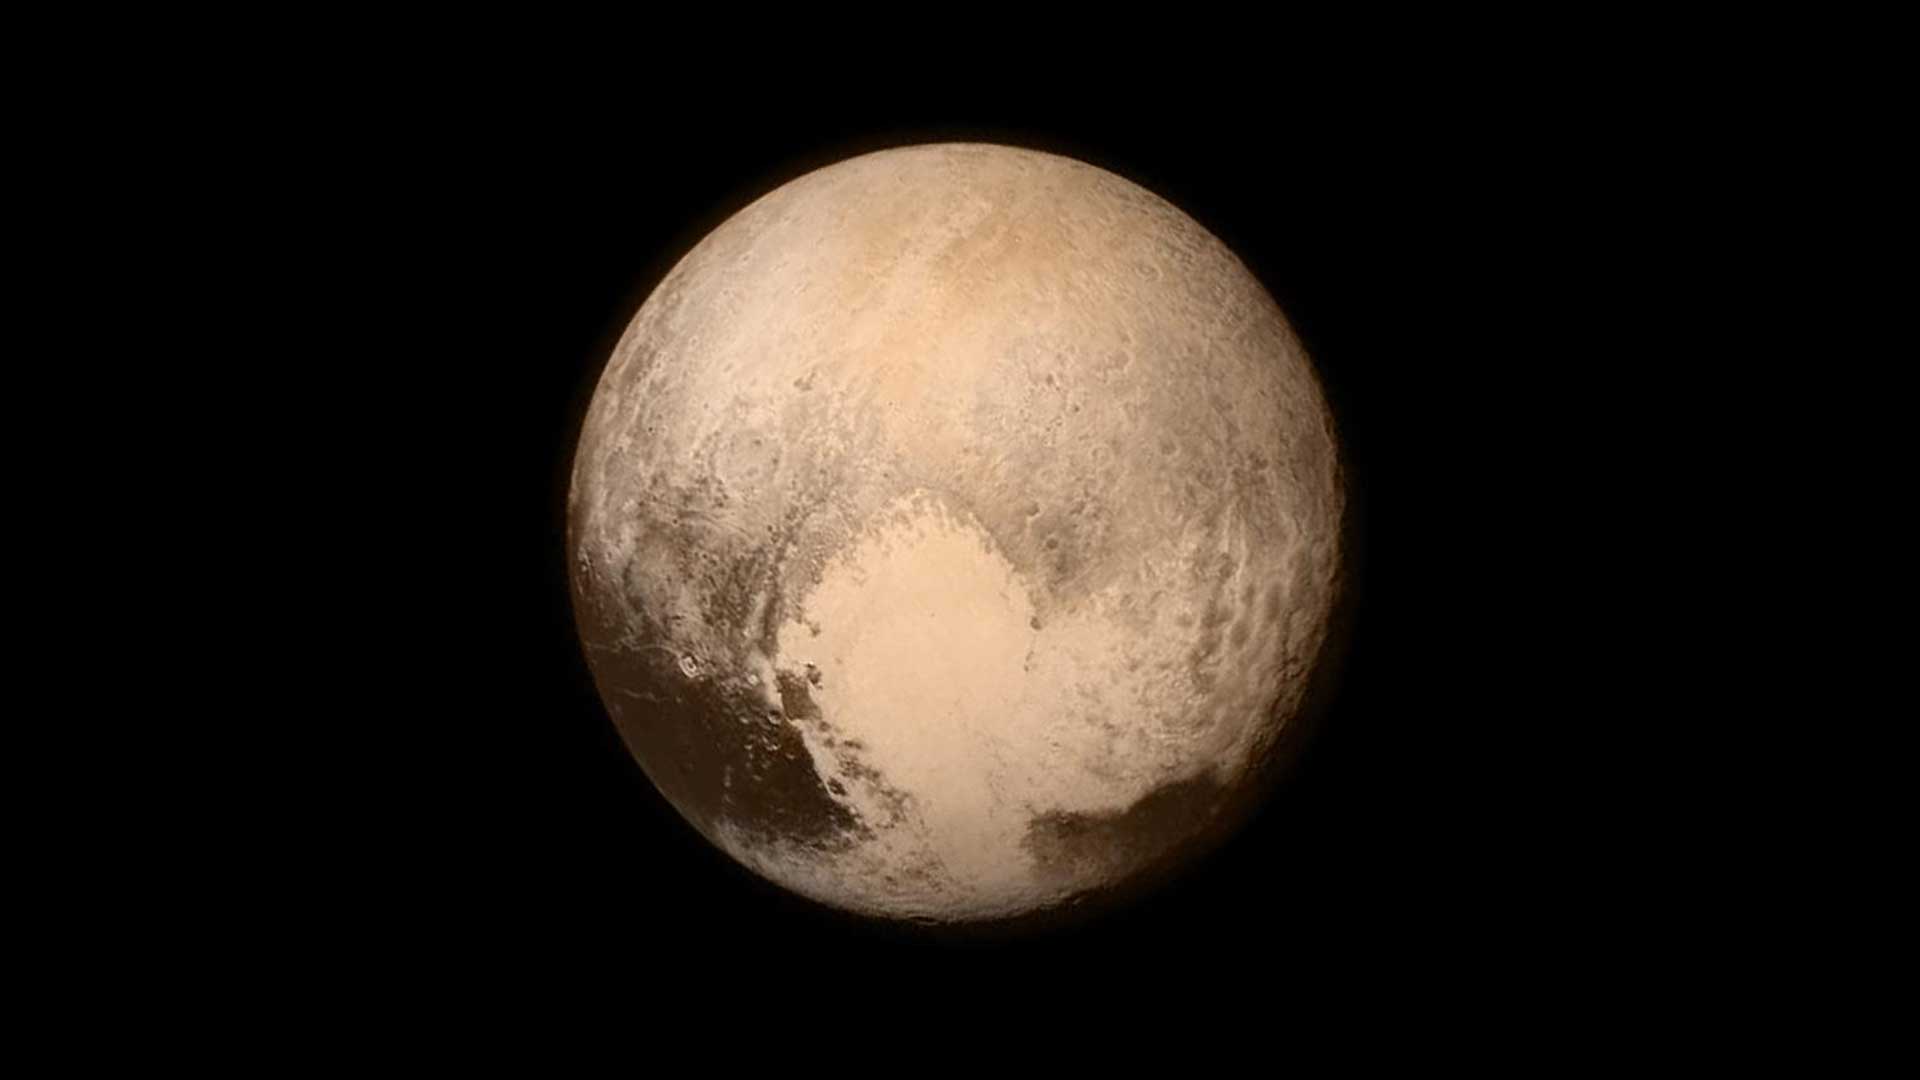 Plutone è rossastro e ha una macchia più chiara a forma di cuore nella metà inferiore destra di questa immagine della navicella spaziale New Horizons.